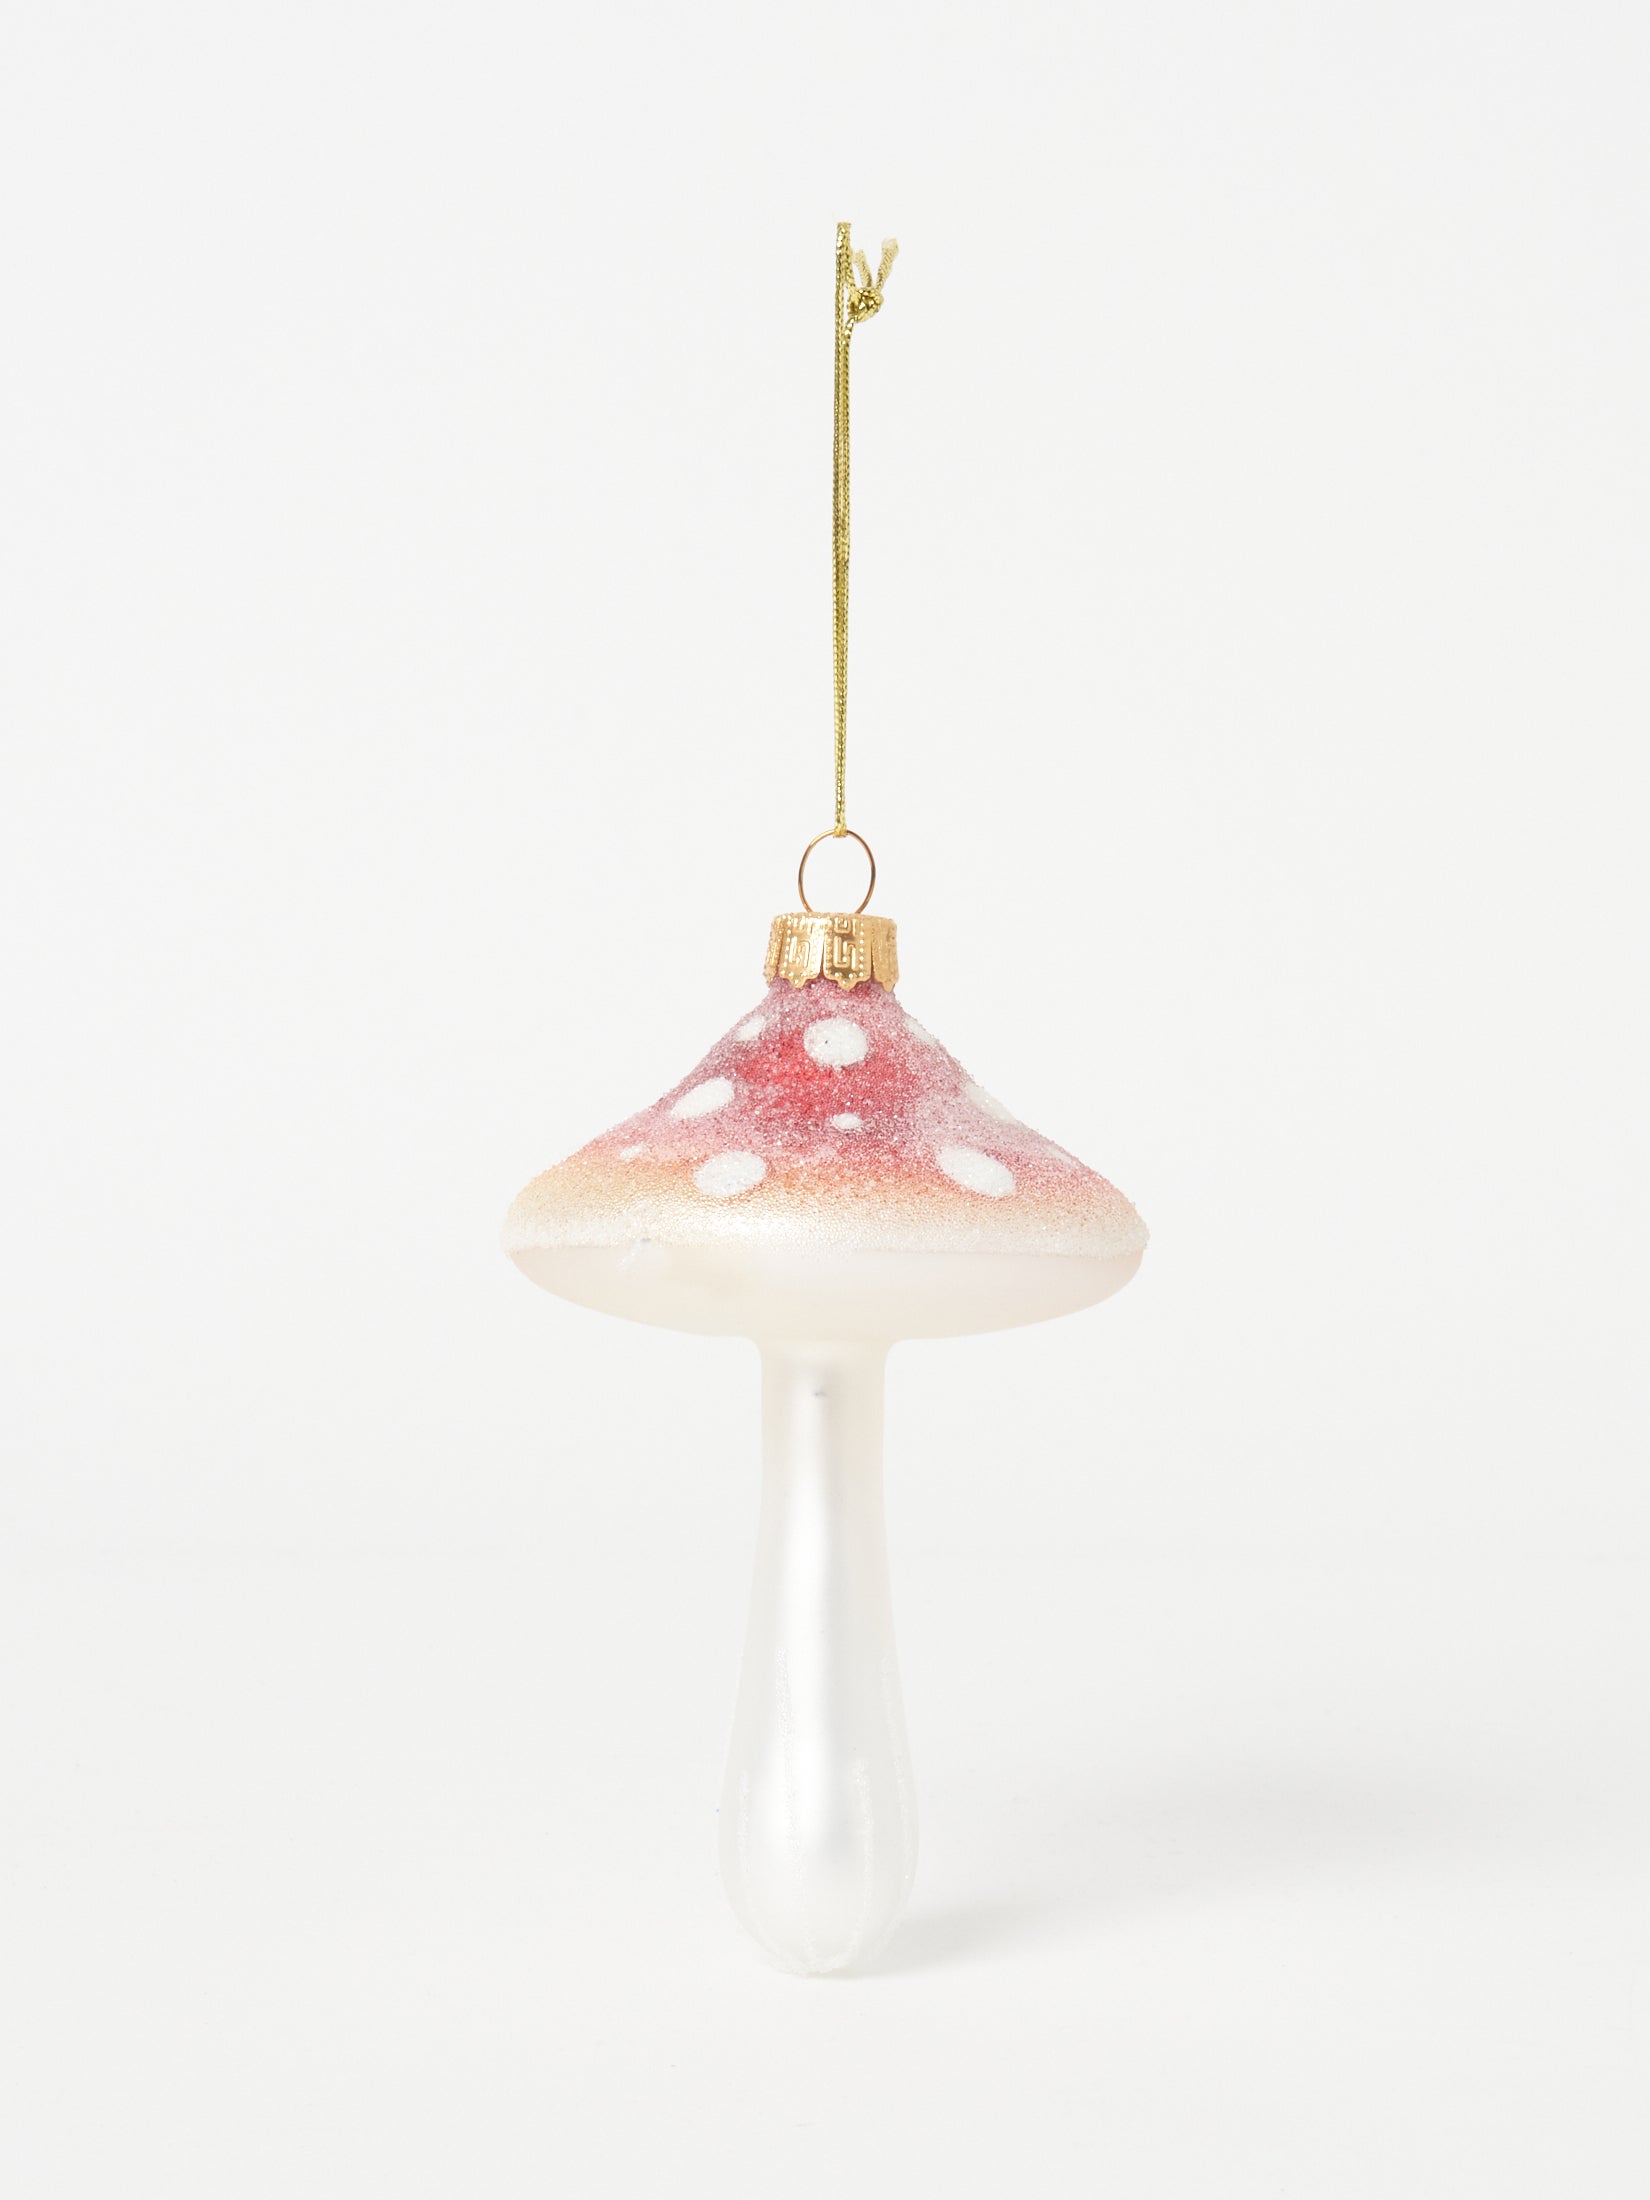 mushroom ornament ❀** 小さ目 ピンク キノコさん傘はこれまた珍しい ...